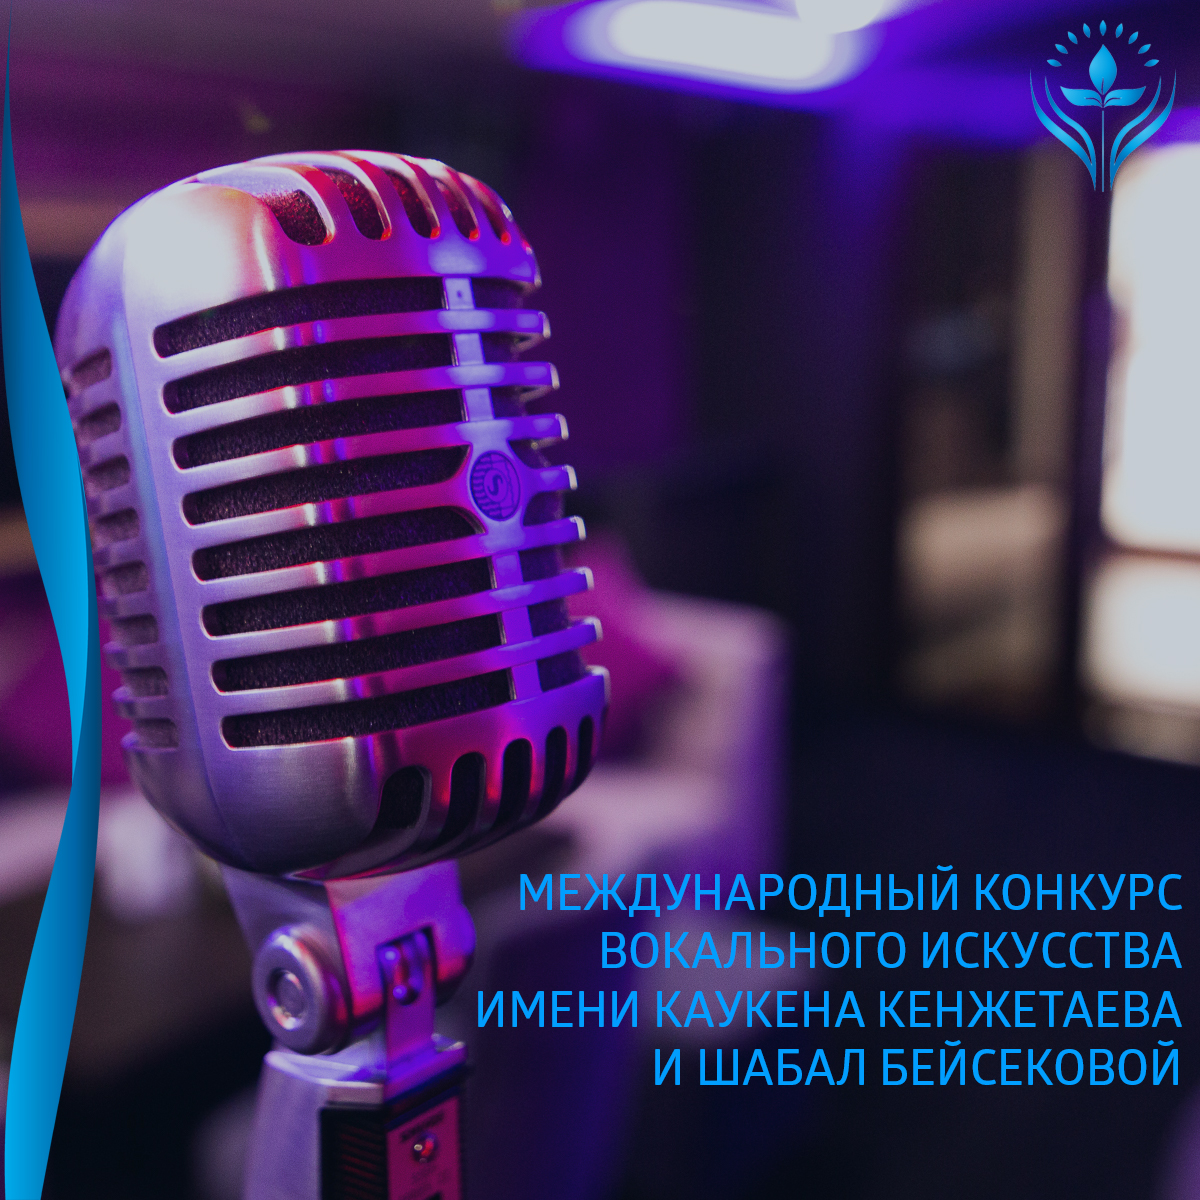 Международный конкурс вокального искусства имени Каукена Кенжетаева и Шабал Бейсековой